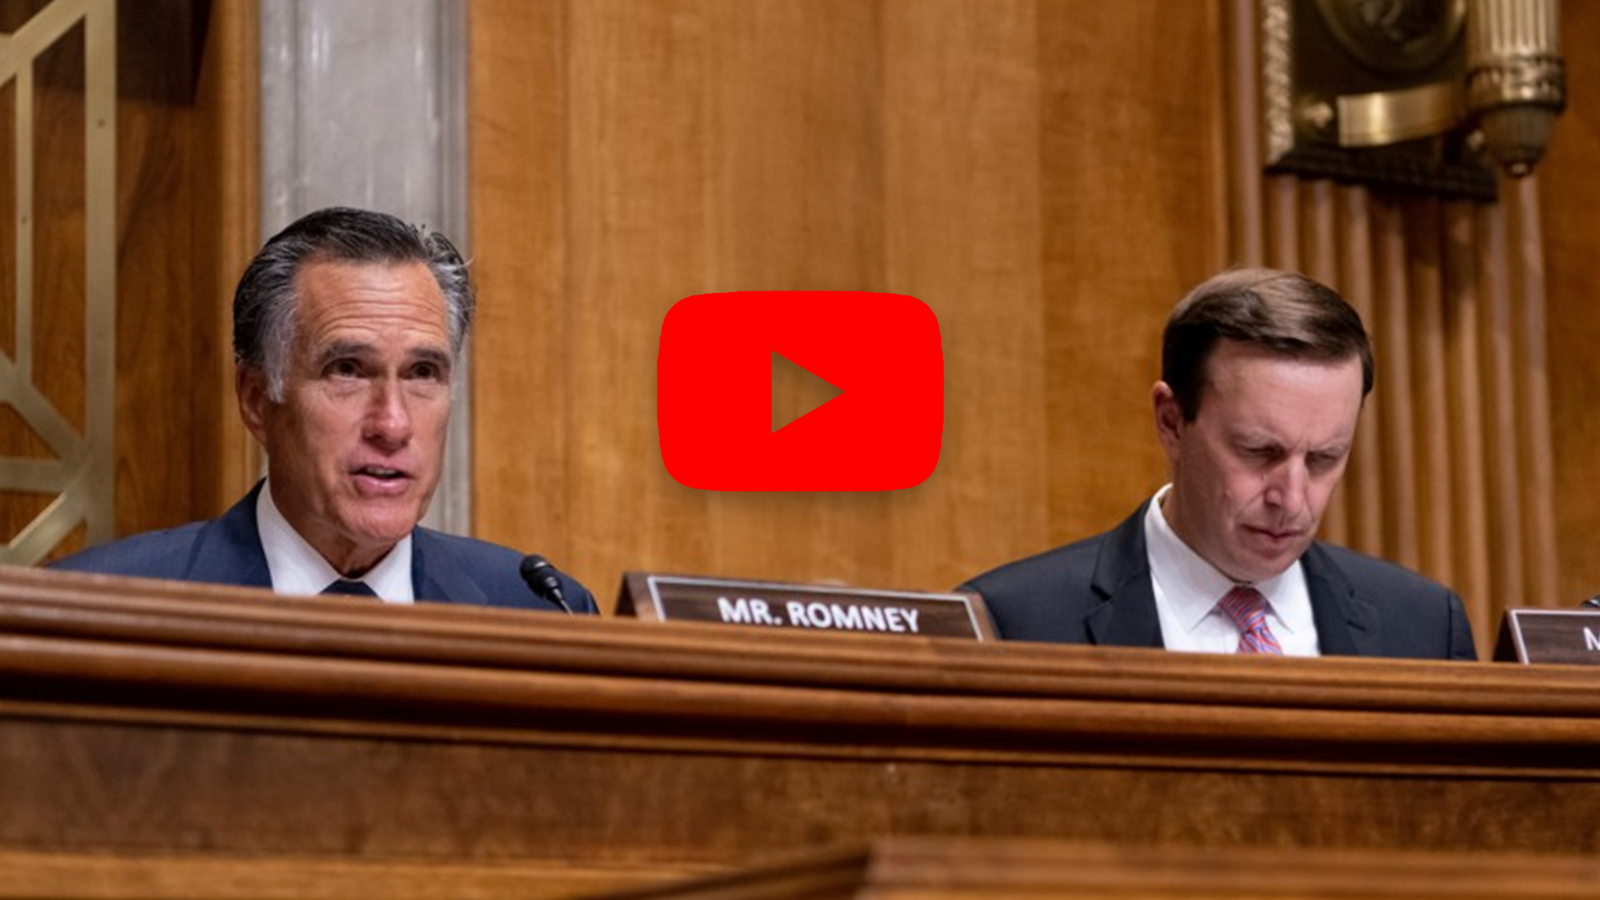 senator romney's opening remarks